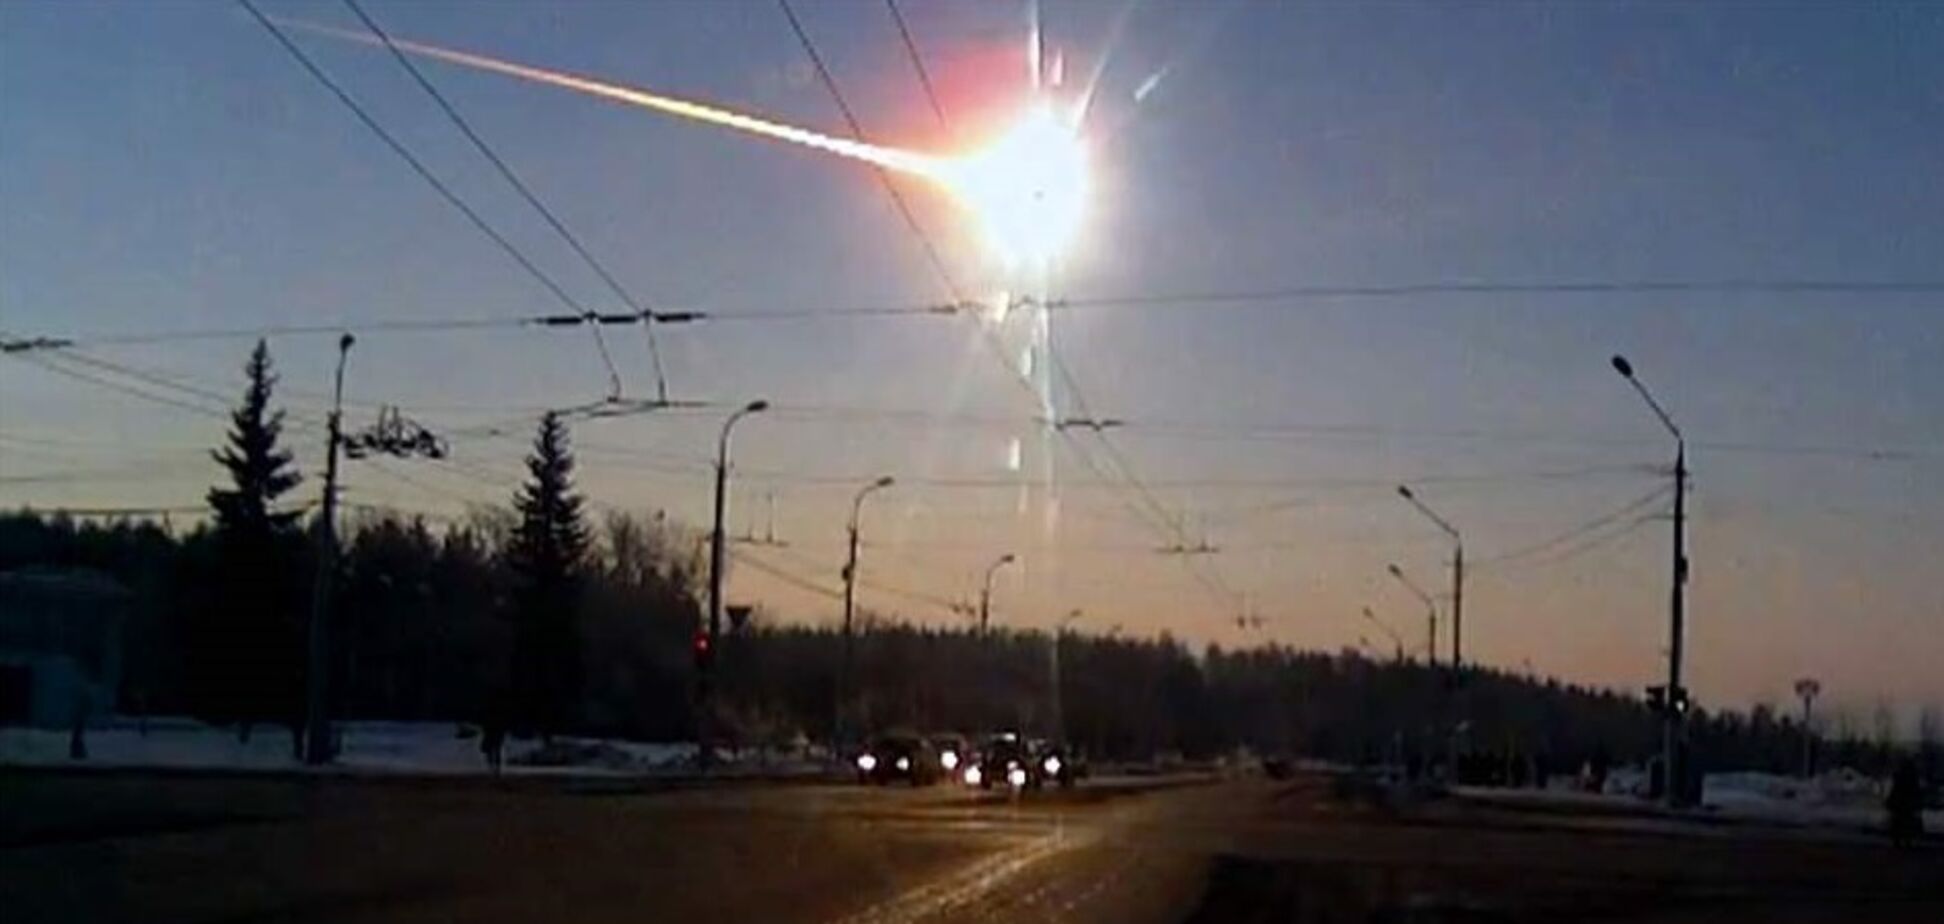 'Инопланетяне?' Загадочная вспышка в небе напугала Сибирь. Видео